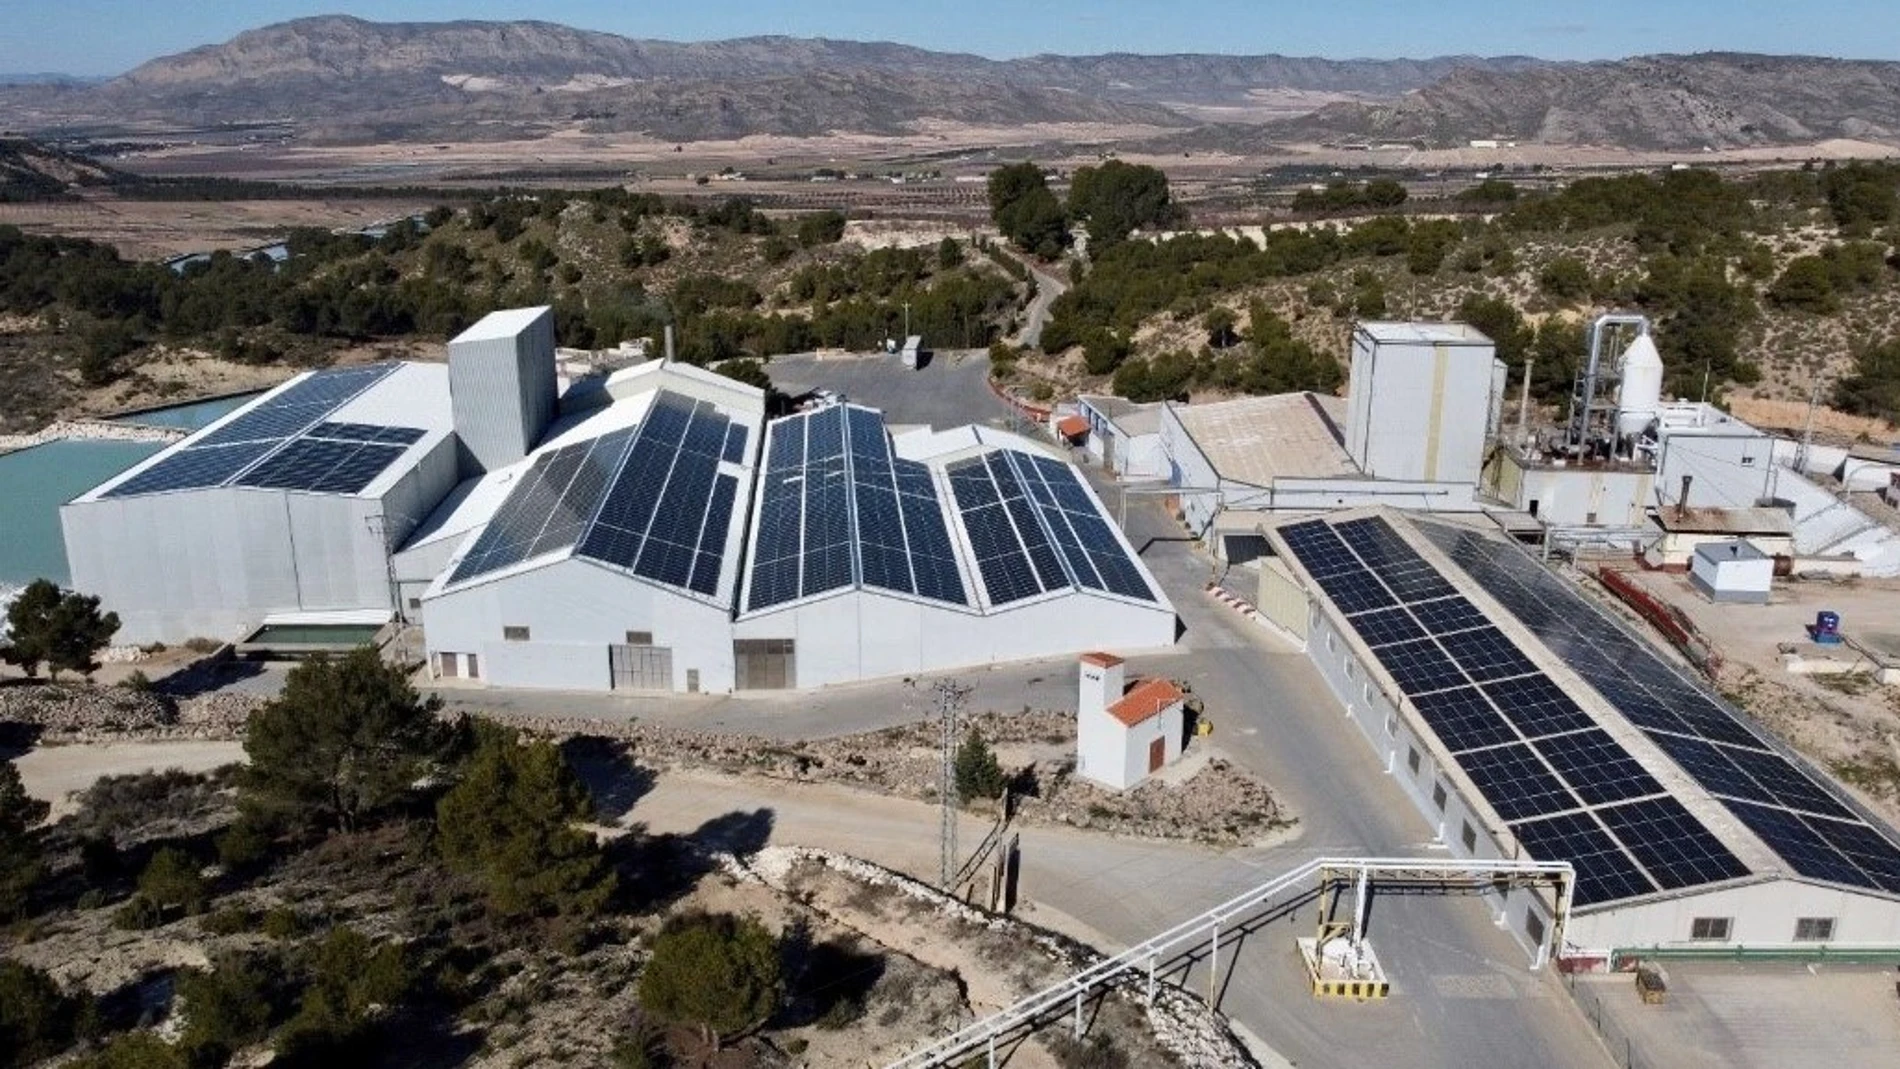 Instalación fotovoltaica de autoconsumo sobre cubierta de Jumsal 